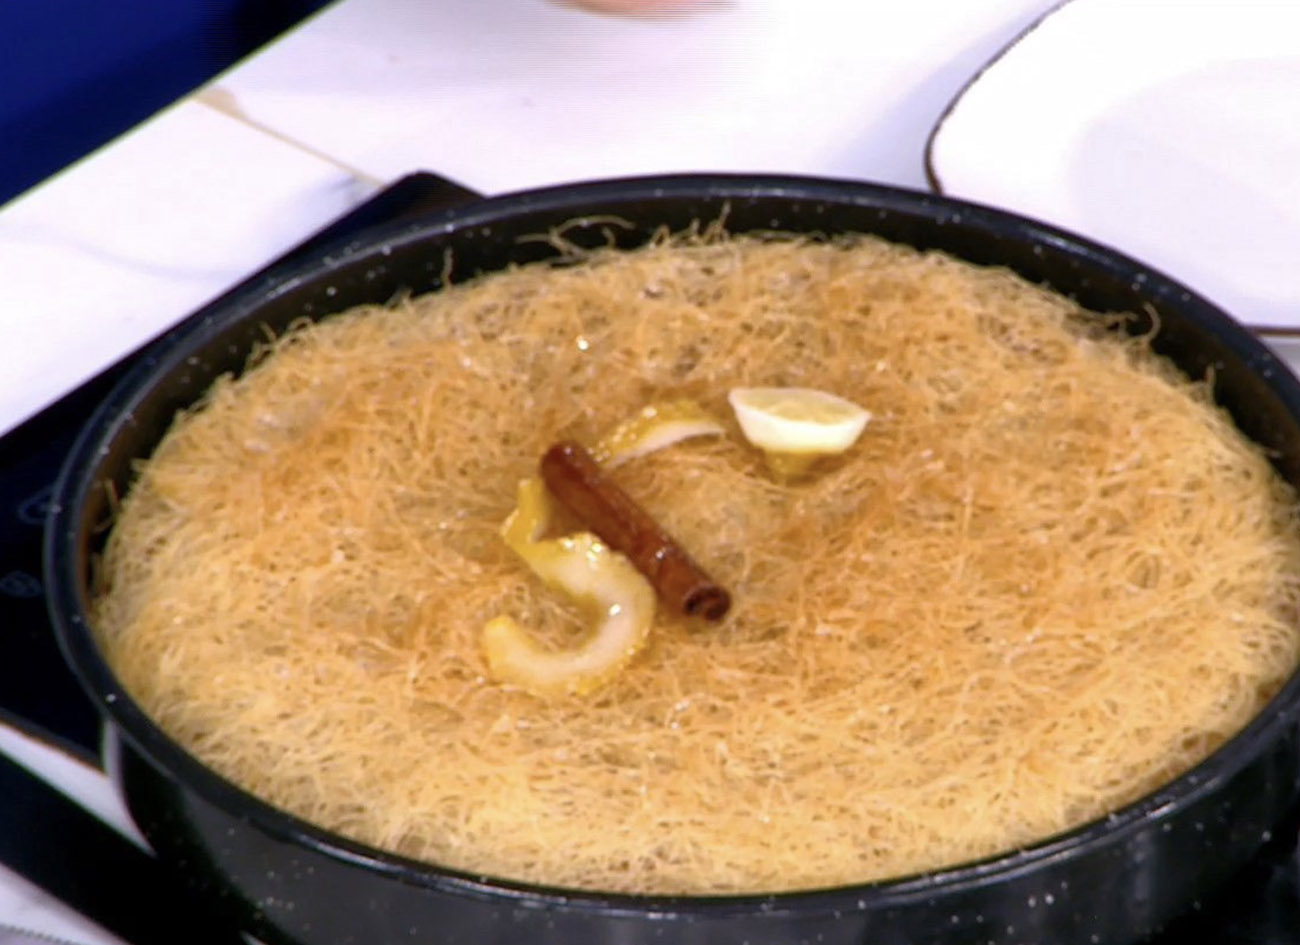 Συνταγή: Γαλακτομπούρεκο με φύλλο κανταΐφι από την Αργυρώ Μπαρμπαρίγου